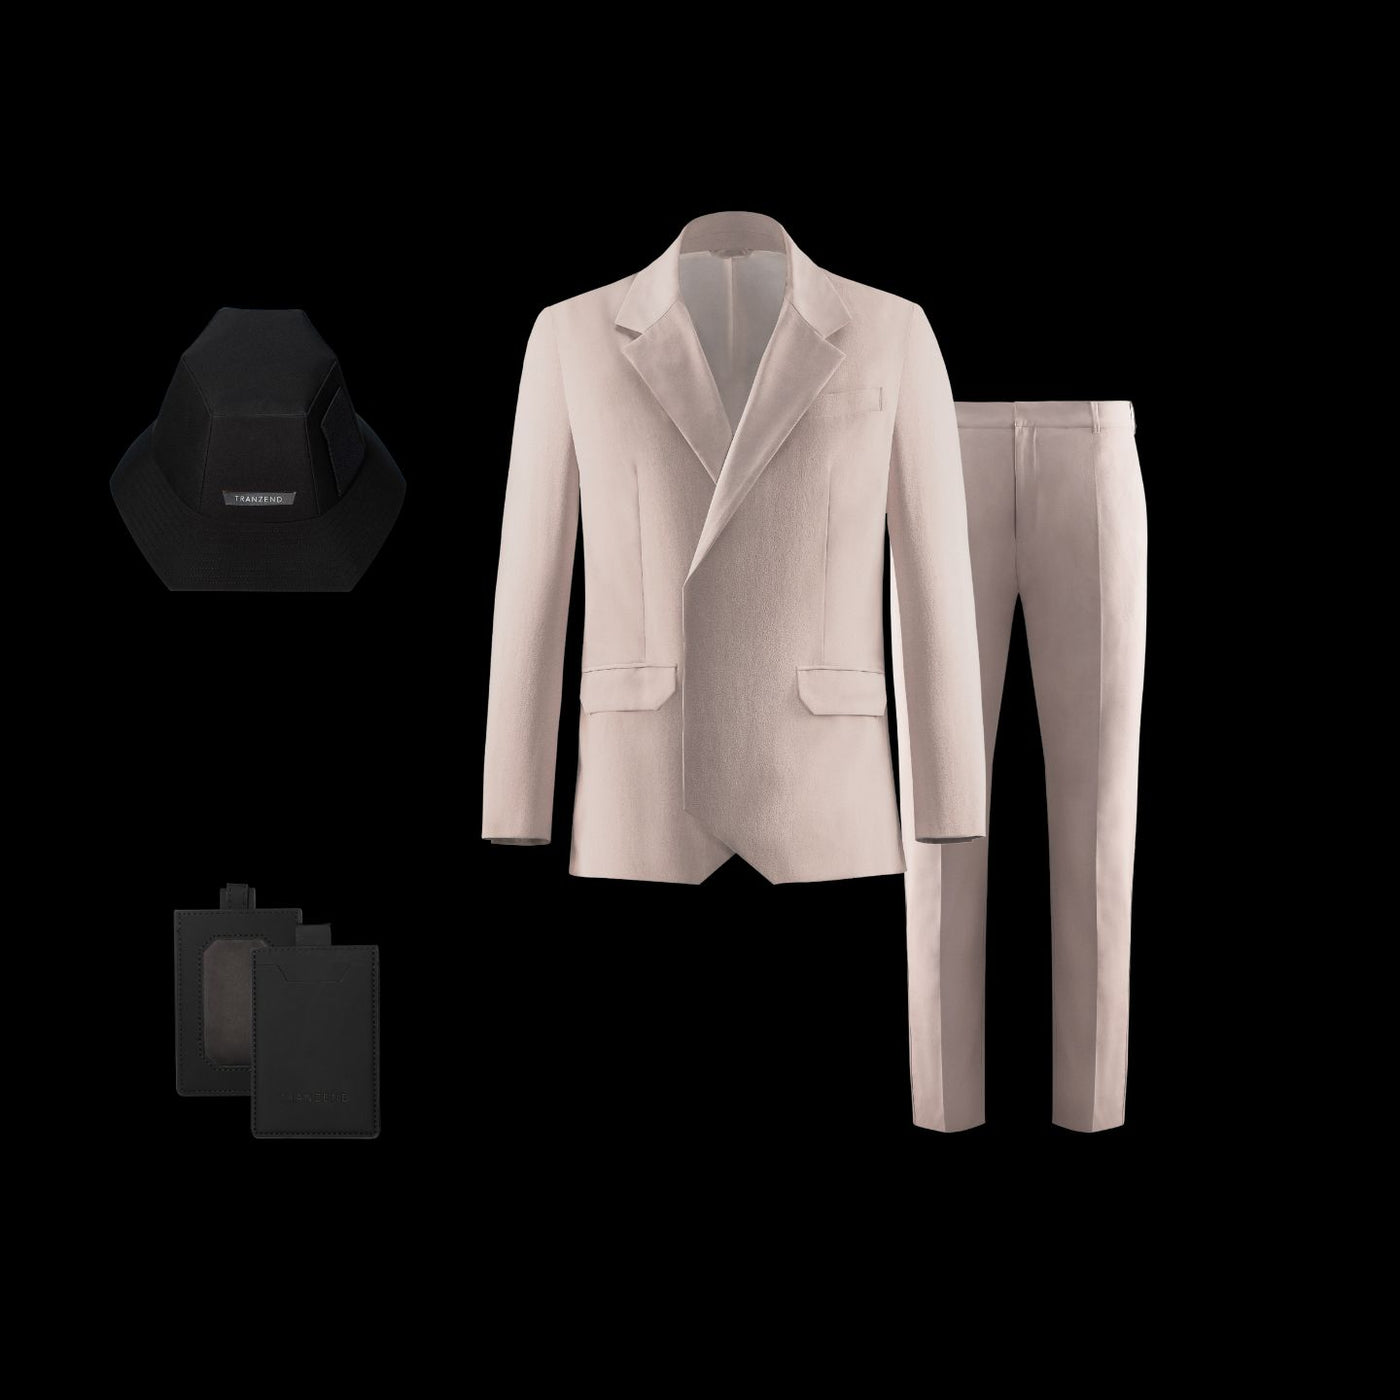 Ultra Suit 3.0 雙排扣套裝組合 白晝沙 + M-system